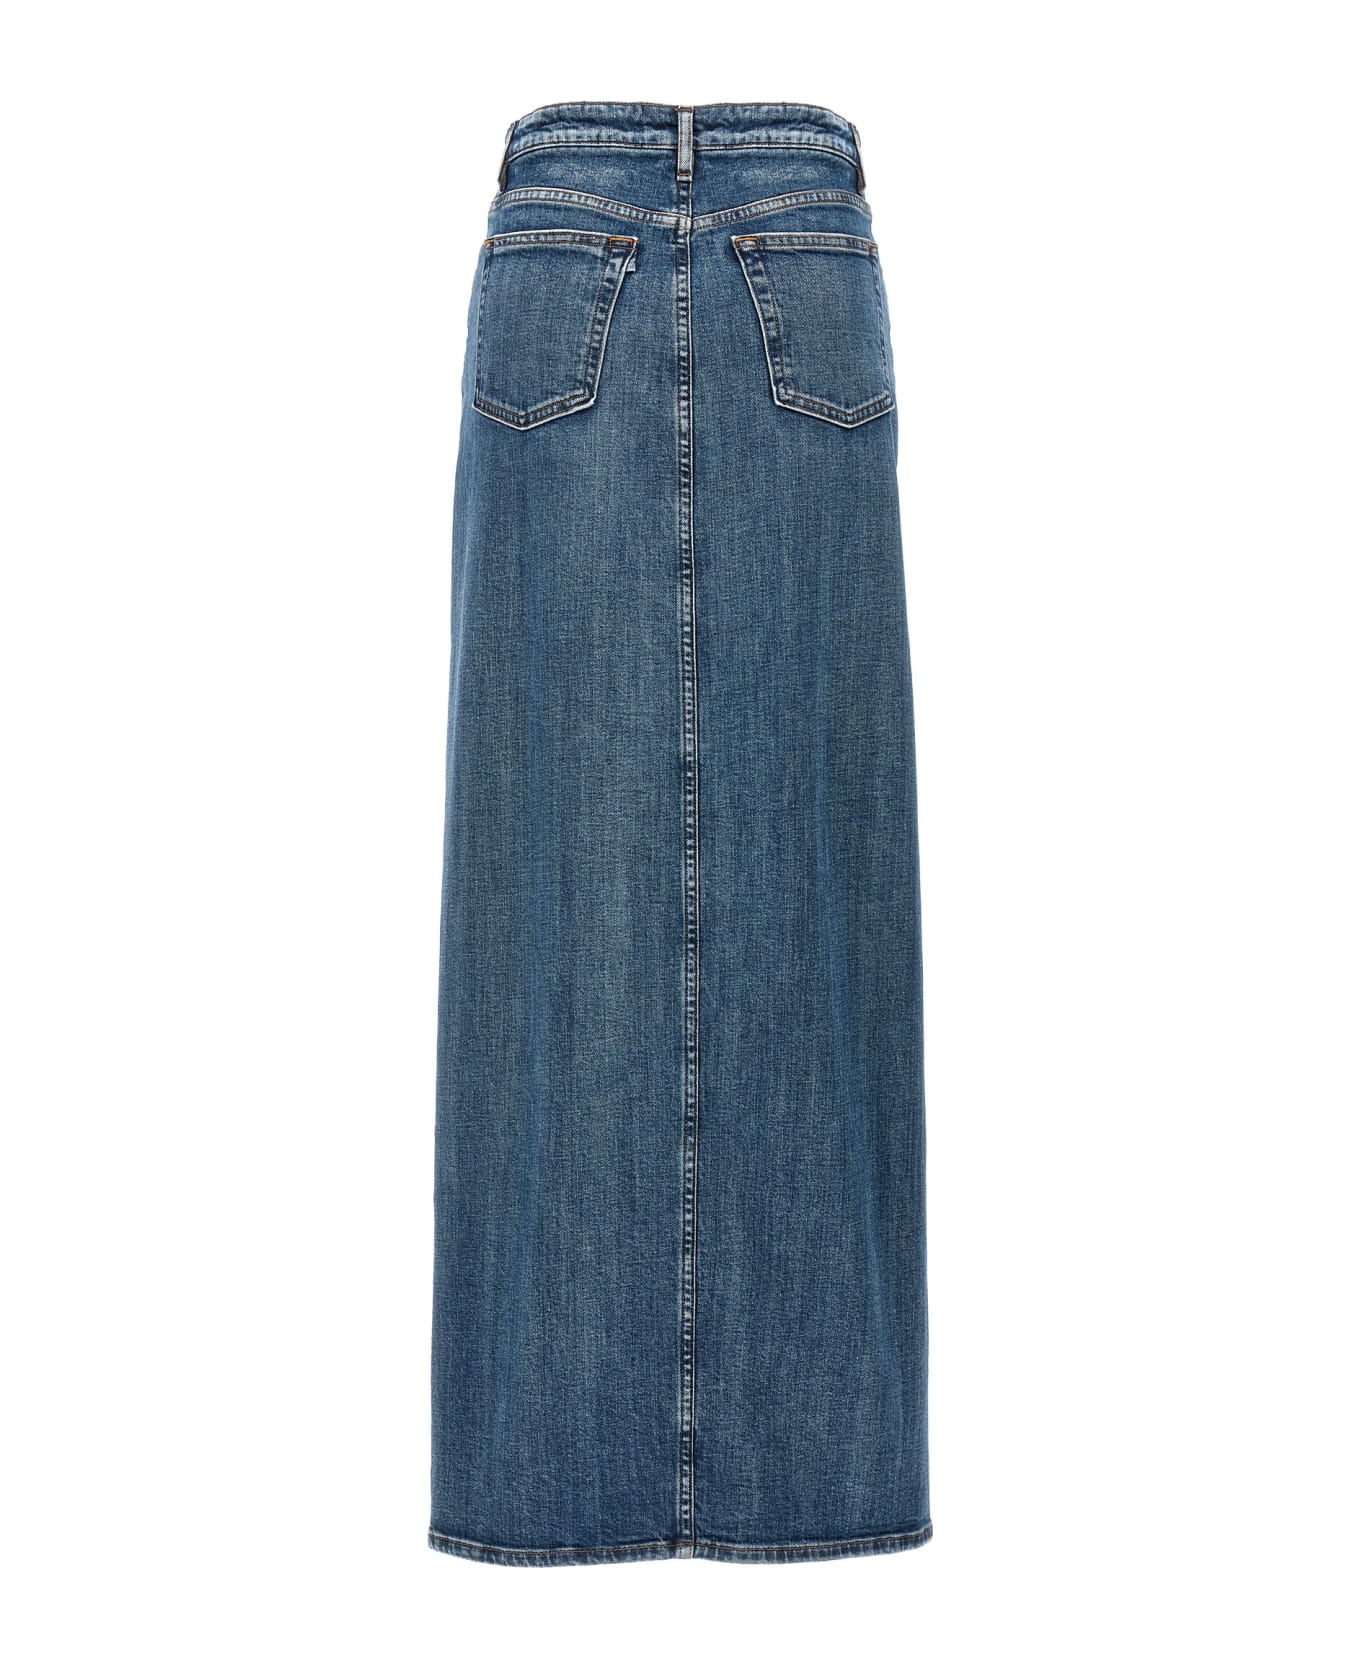 3x1 'elizabella Long' Skirt - SOLID BARREL スカート